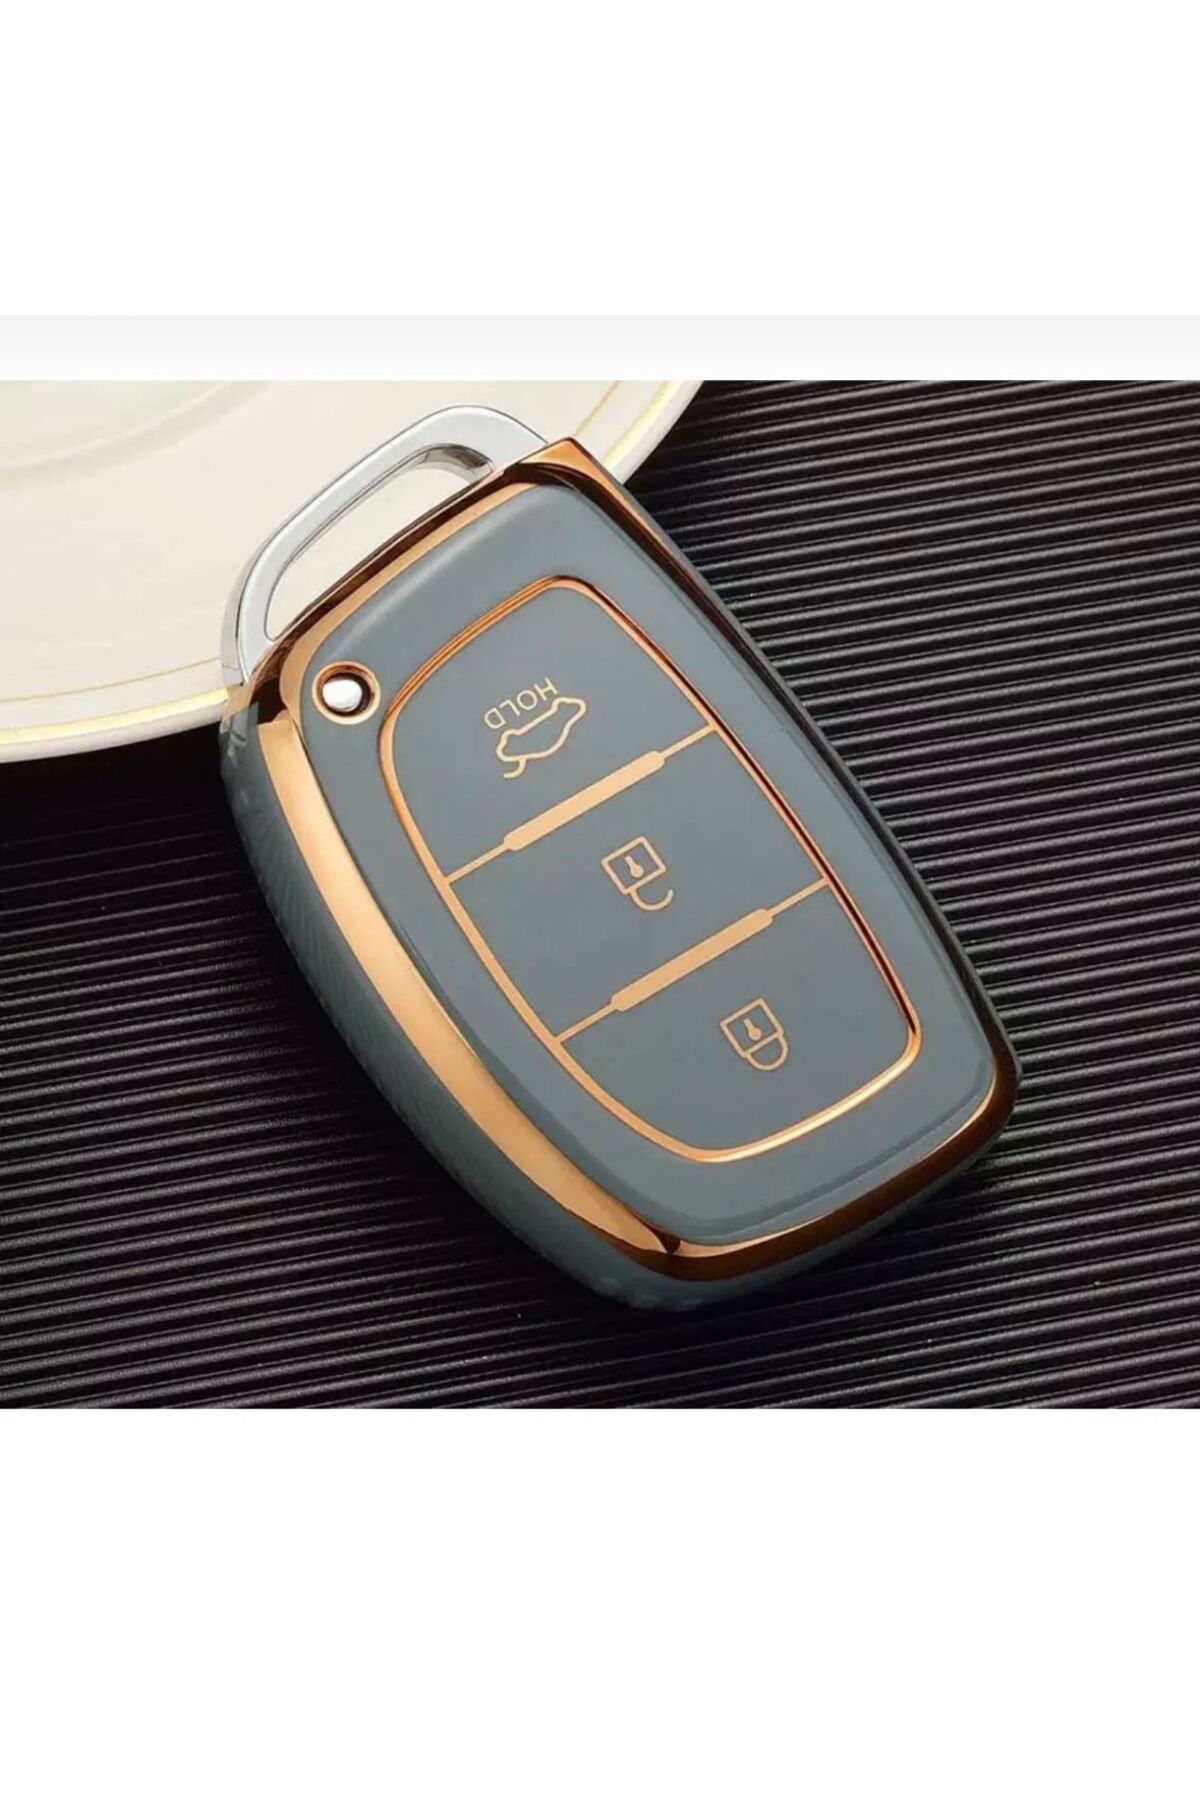 Hyundai 3 button car key cover 